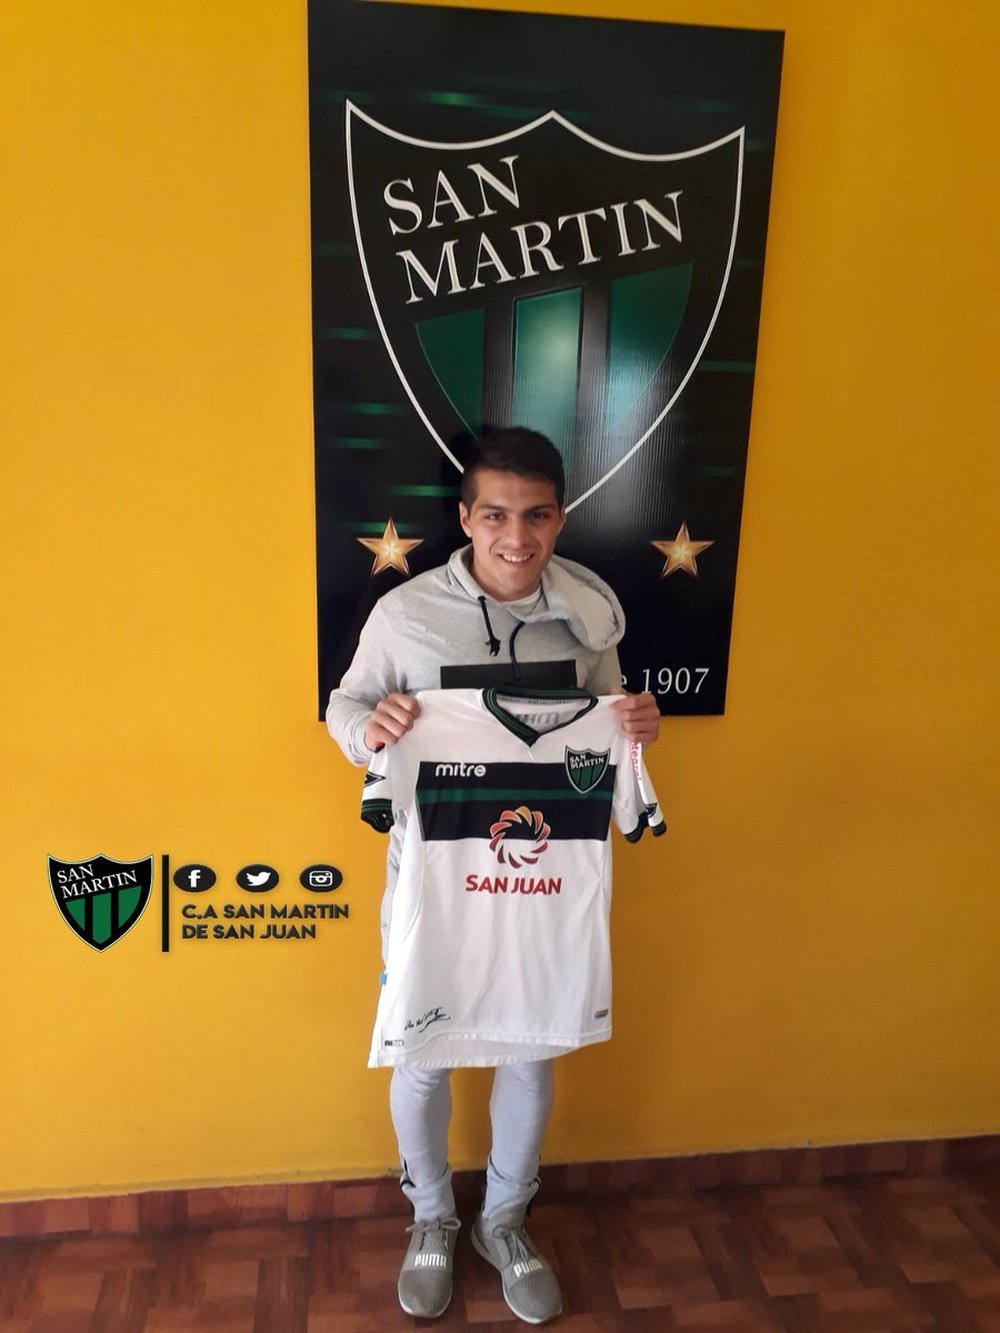 Luis Olivera jugará en San Martín. SanMartín